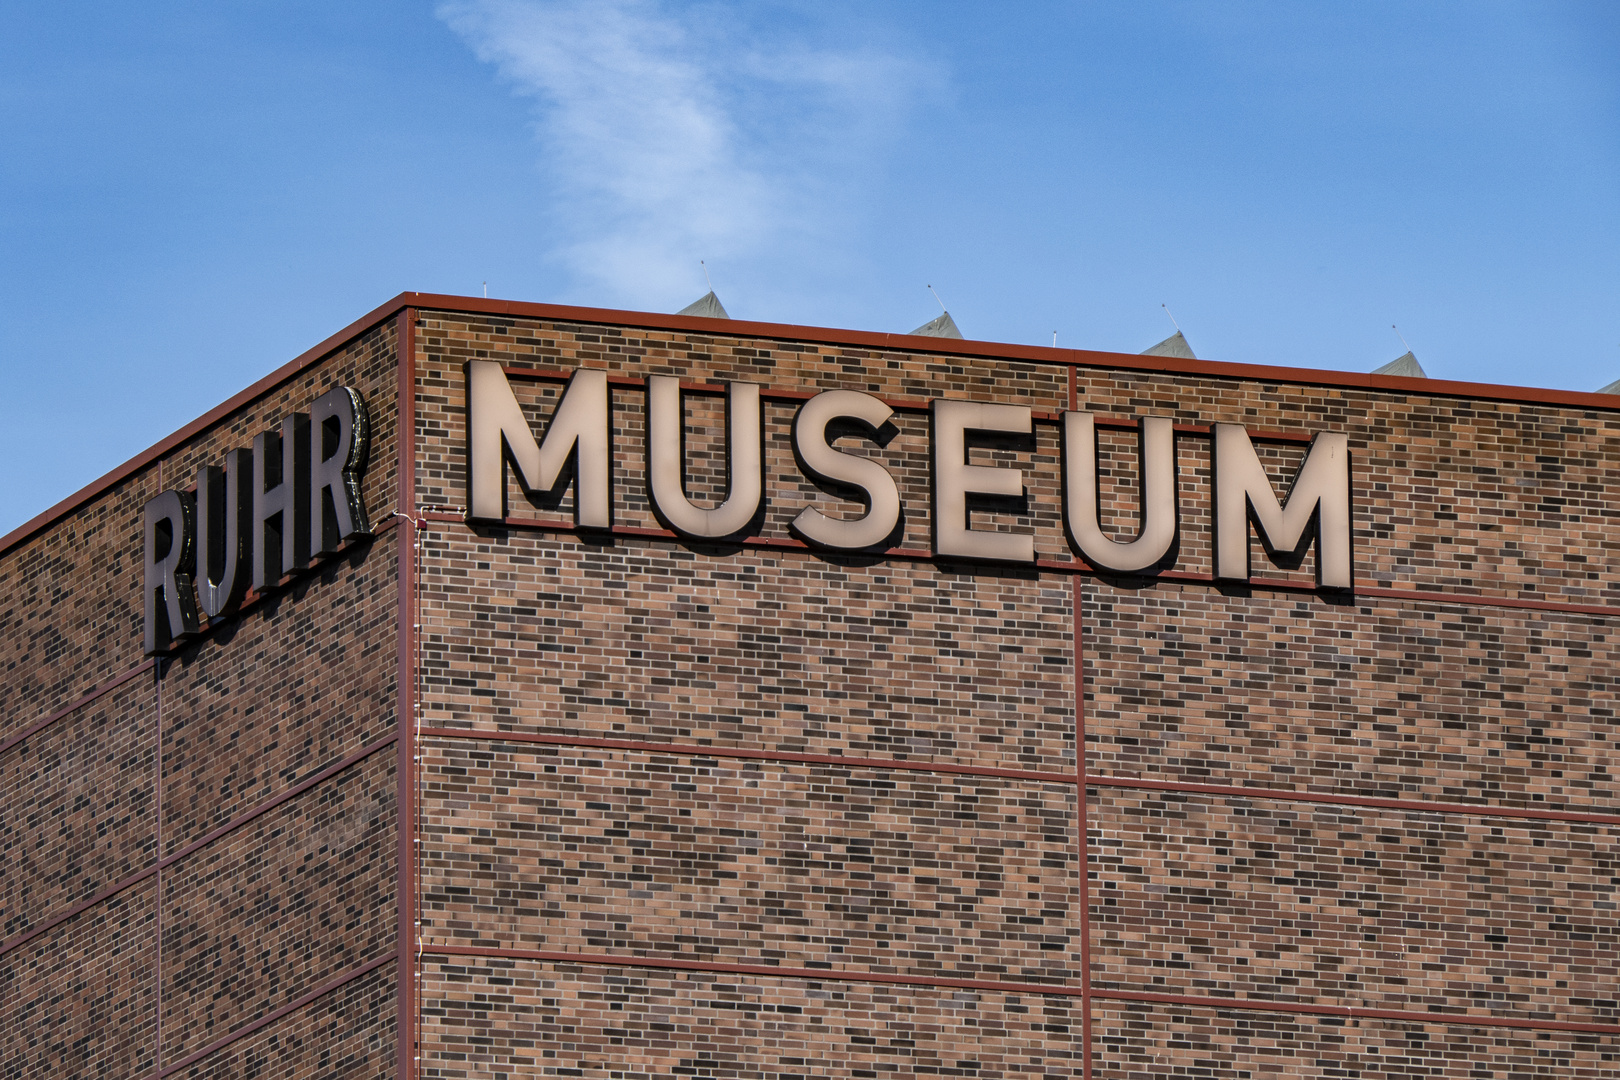 Das Ruhrmuseum auf Zeche Zollverein, Essen